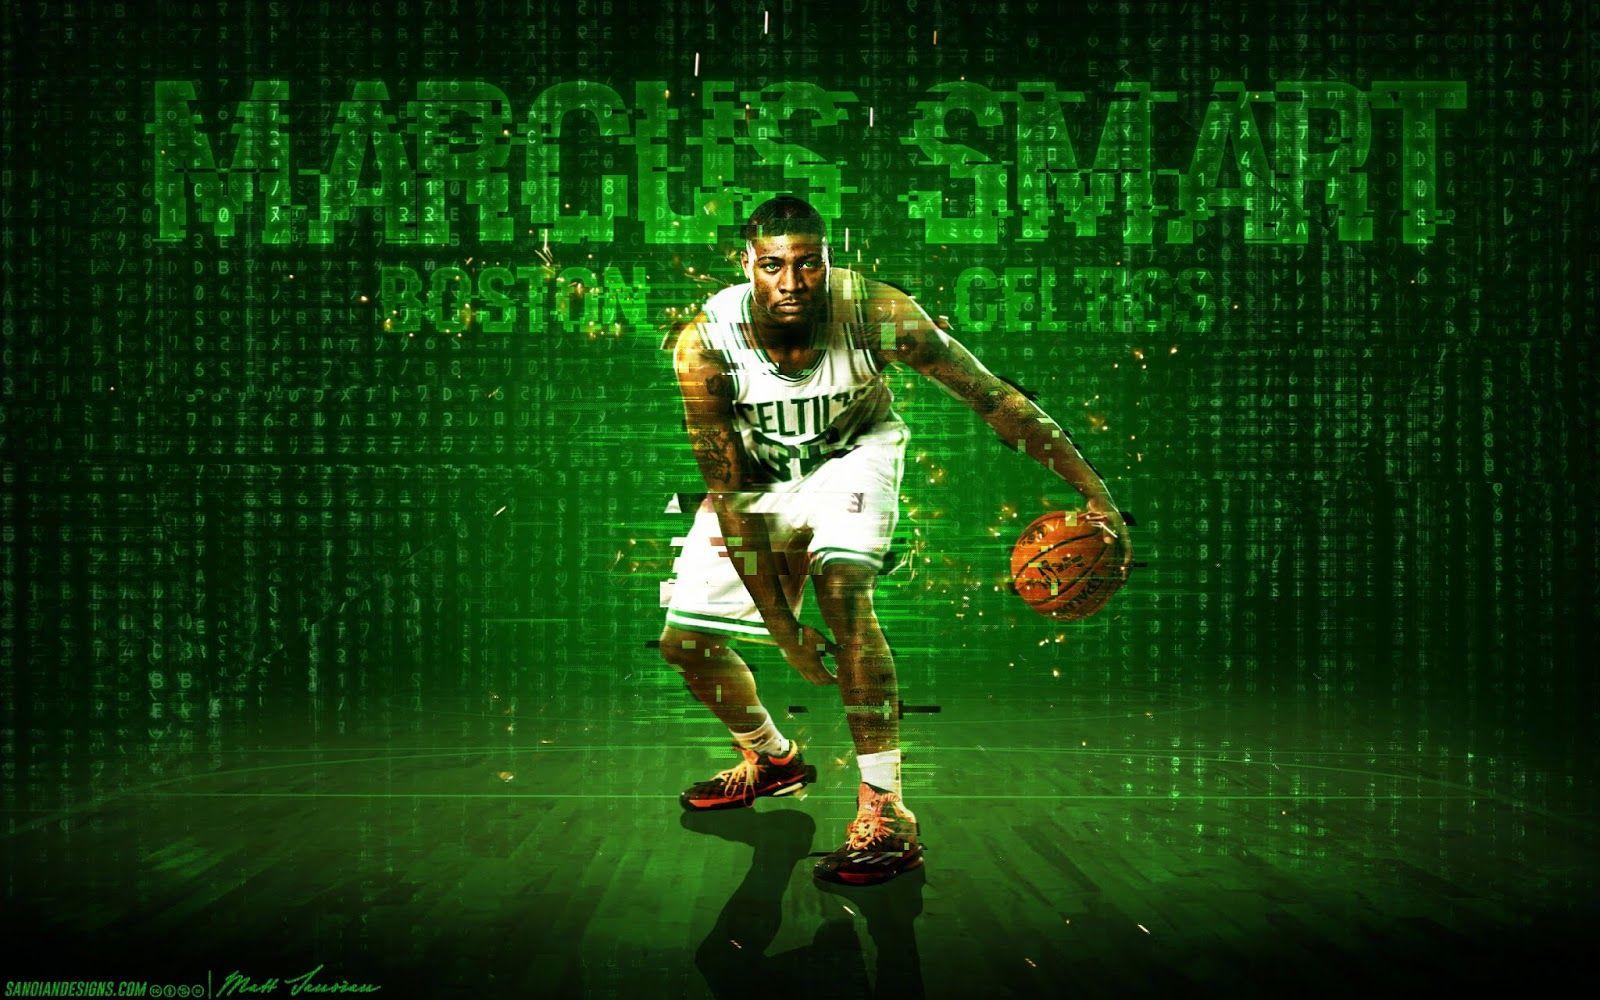 Wallpaper Wednesday: Marcus Smart. CelticsLife.com